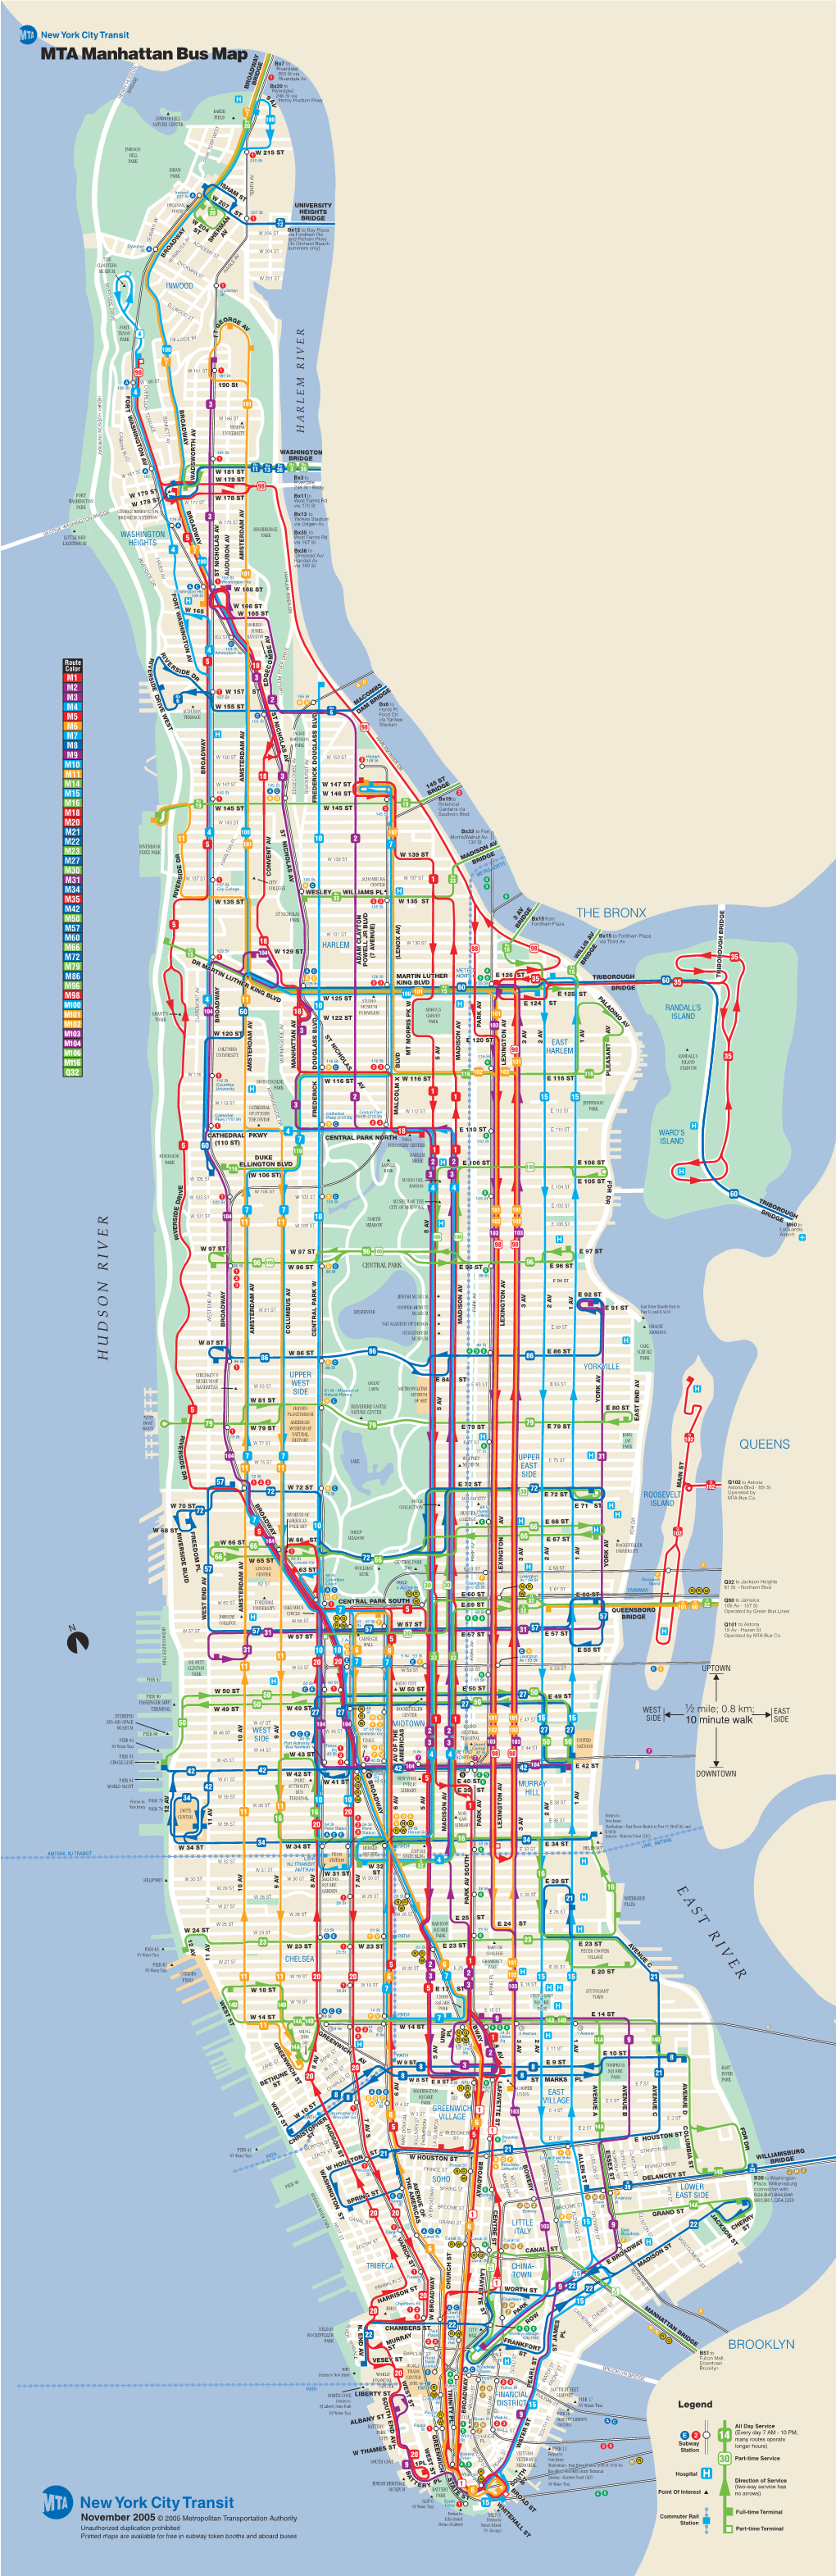 MTA Manhattan Bus Map Y Bx7 to Riverdale/ on 263 St Via 1 Riverdale Av